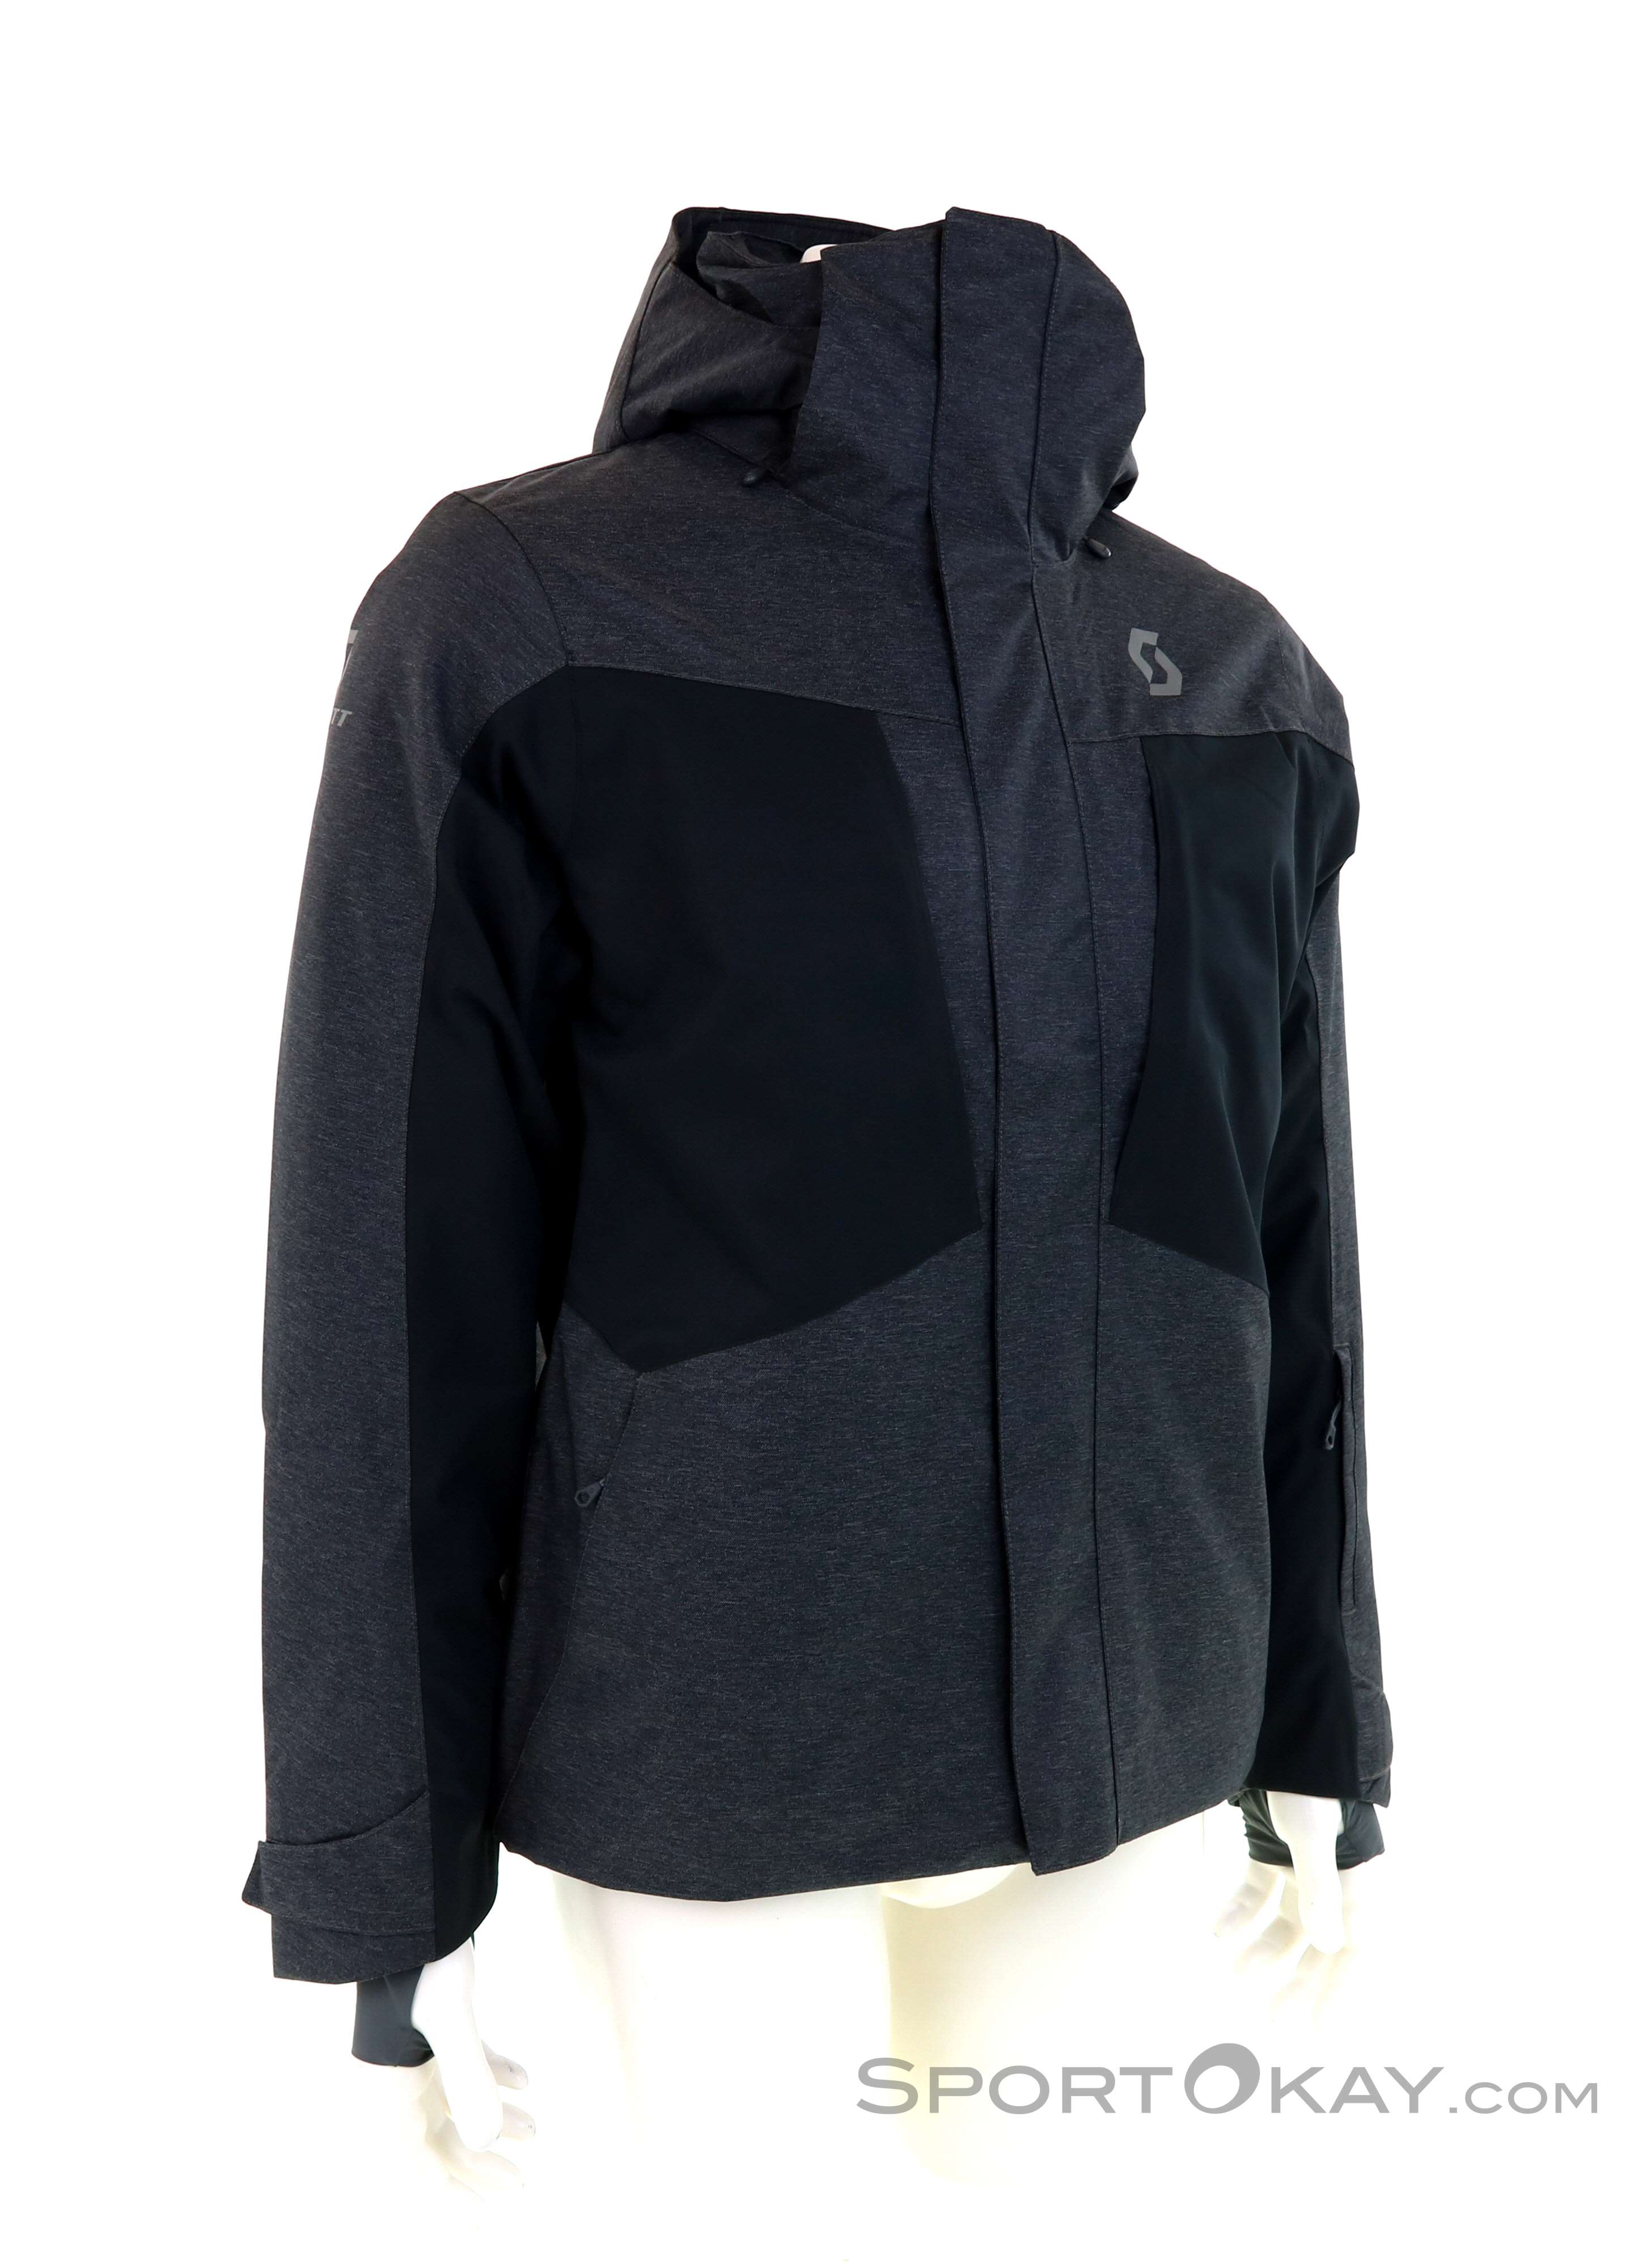 Scott Ultimate Dryo Mens Ski Jacket - Ski Jackets - Ski Clothing